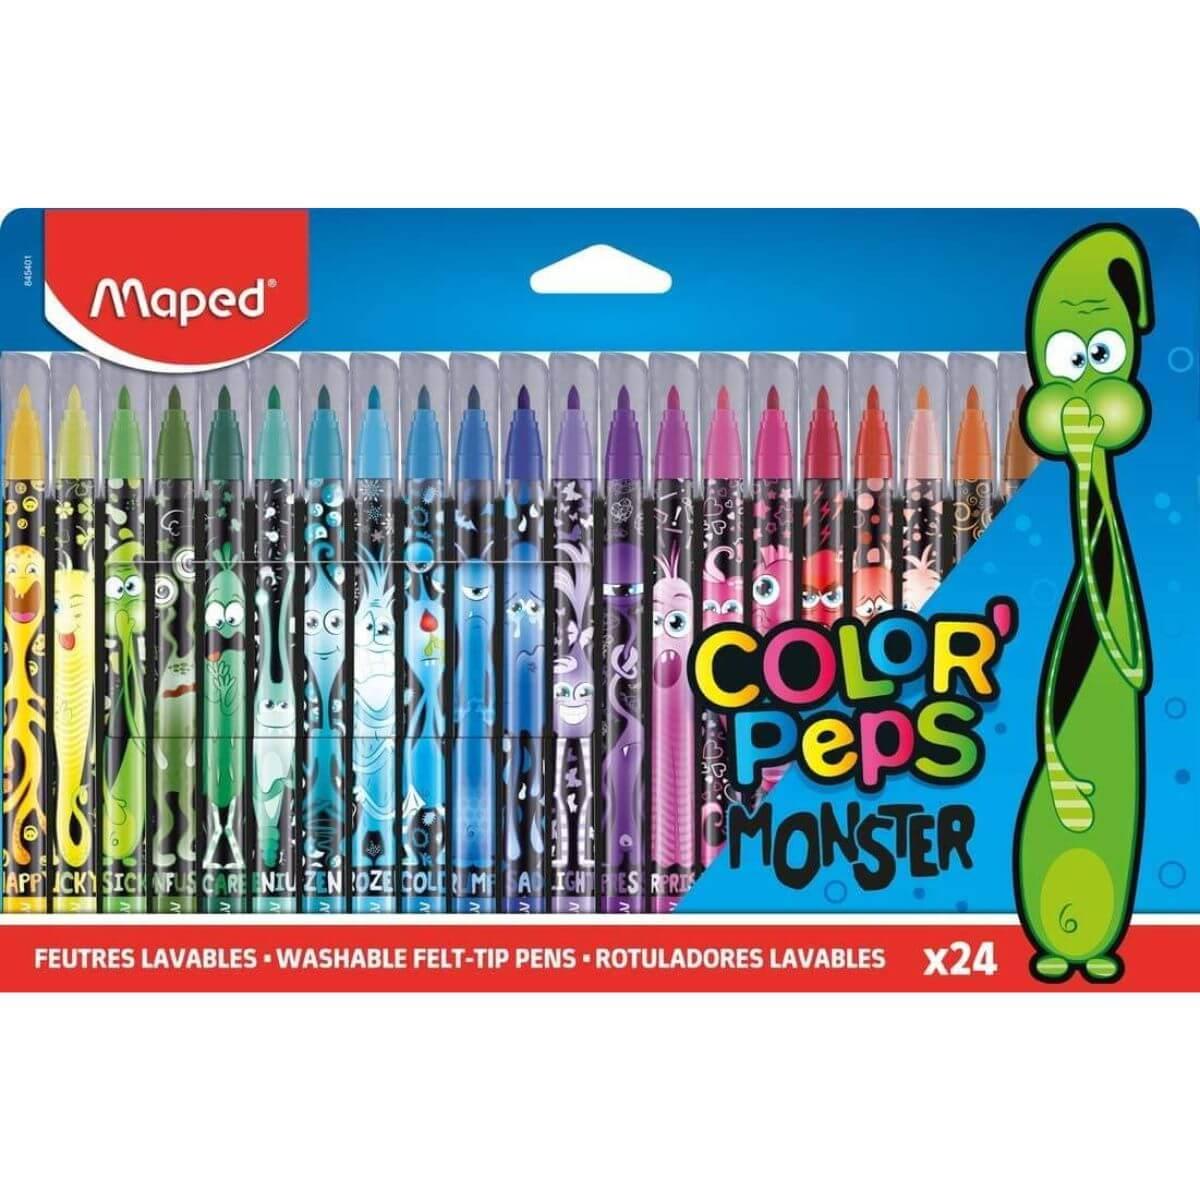 Maped Colour'Peps Monster Felt Tips x 24